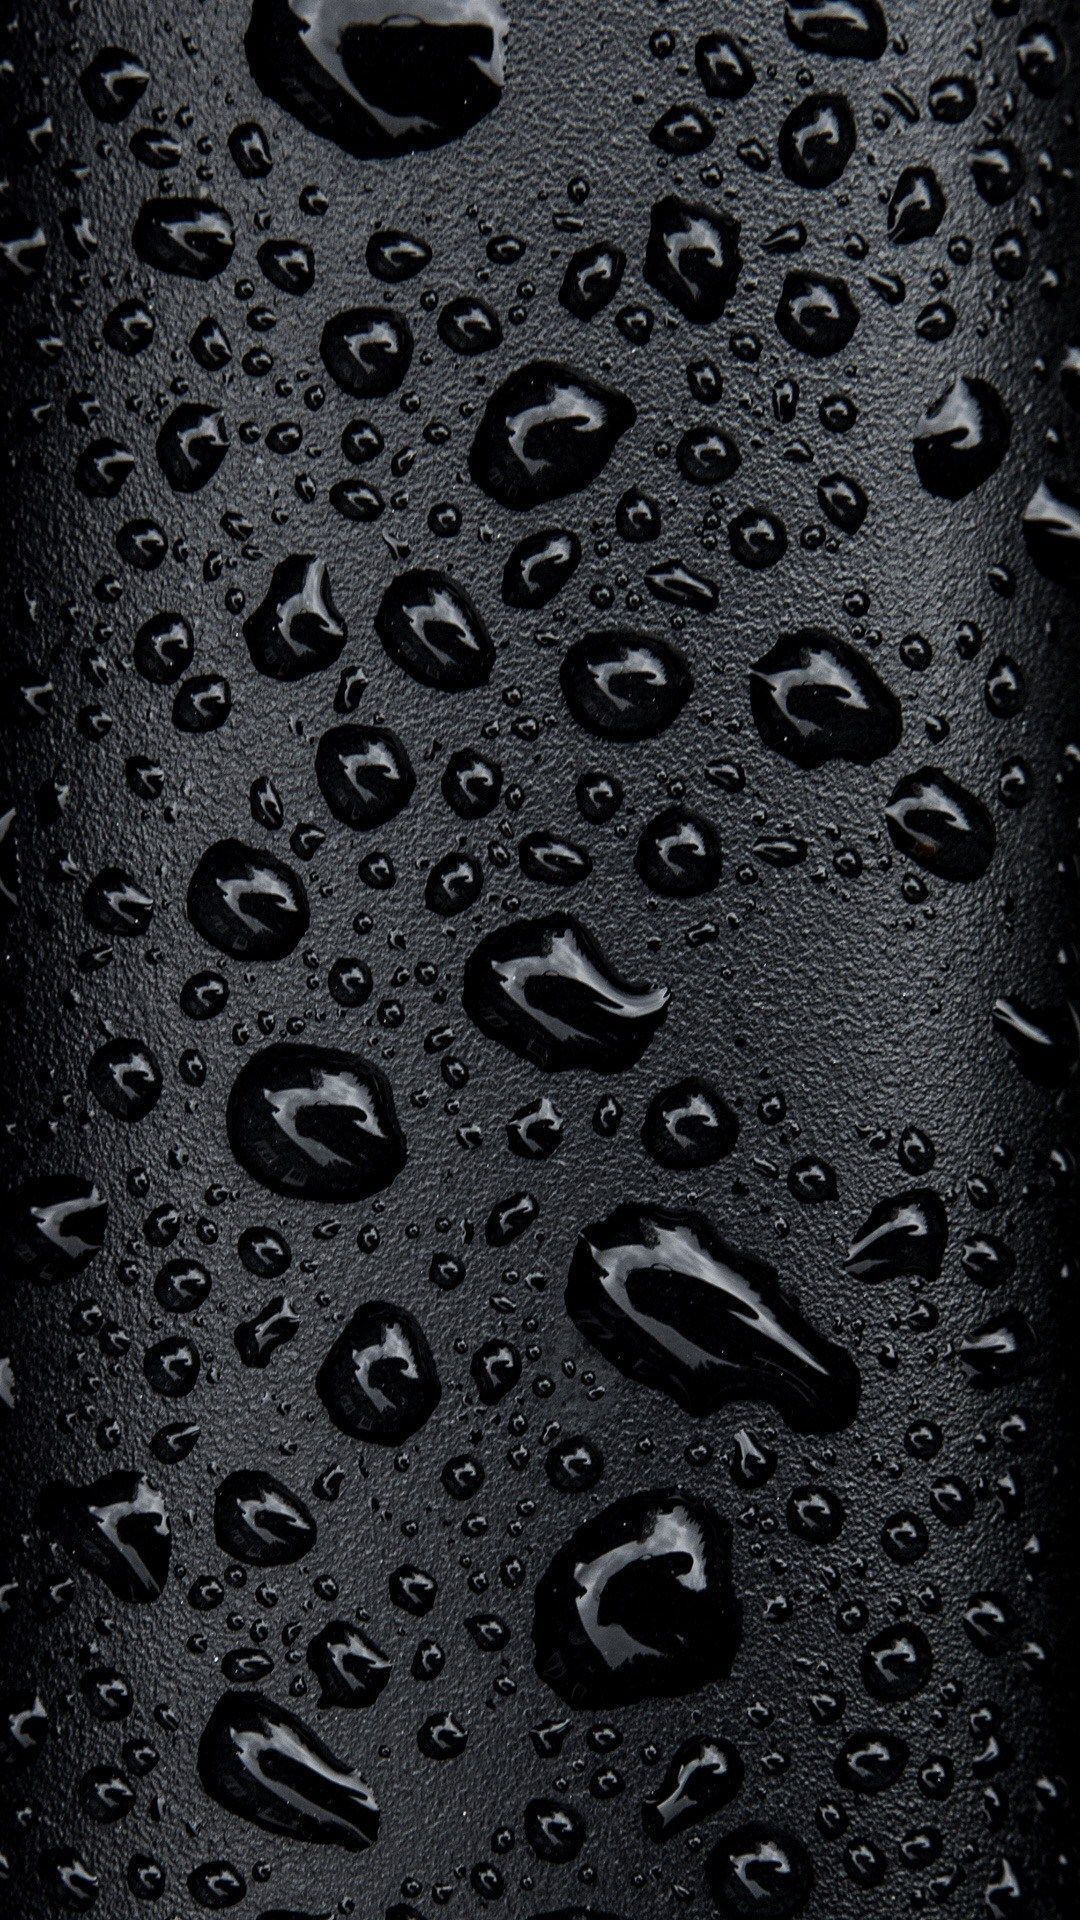 Dark Phone Wallpaper. Android wallpaper black, Black phone wallpaper, Smartphone wallpaper